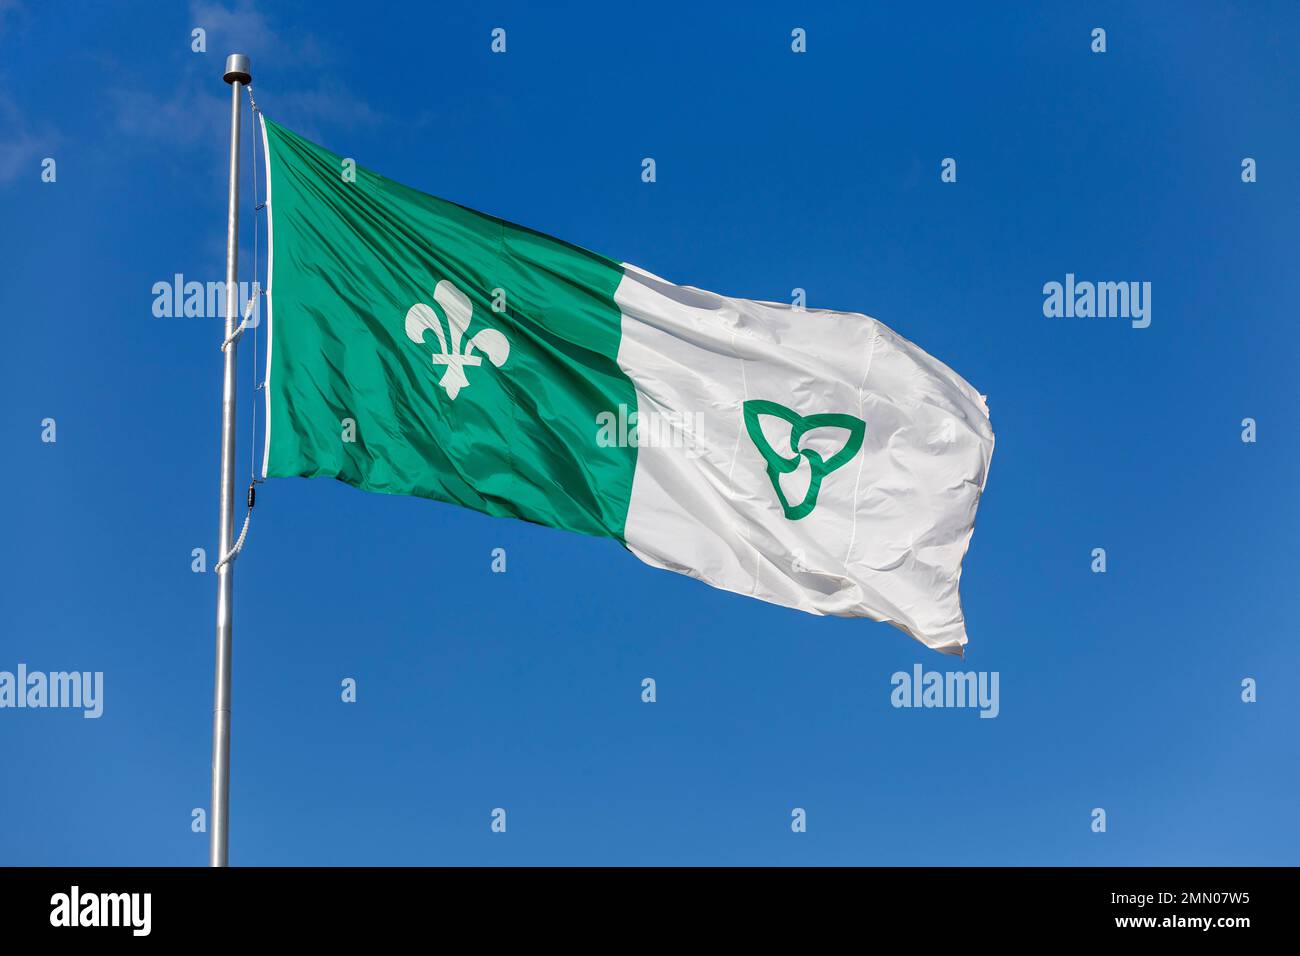 Canada, Ontario, Hawkesbury, bandiera franco-ontaria, creata nel 1975 e qui vicino al monumento della Francofonia, battezzato Pioneer Monument costruito sull'isola di Chenail Foto Stock